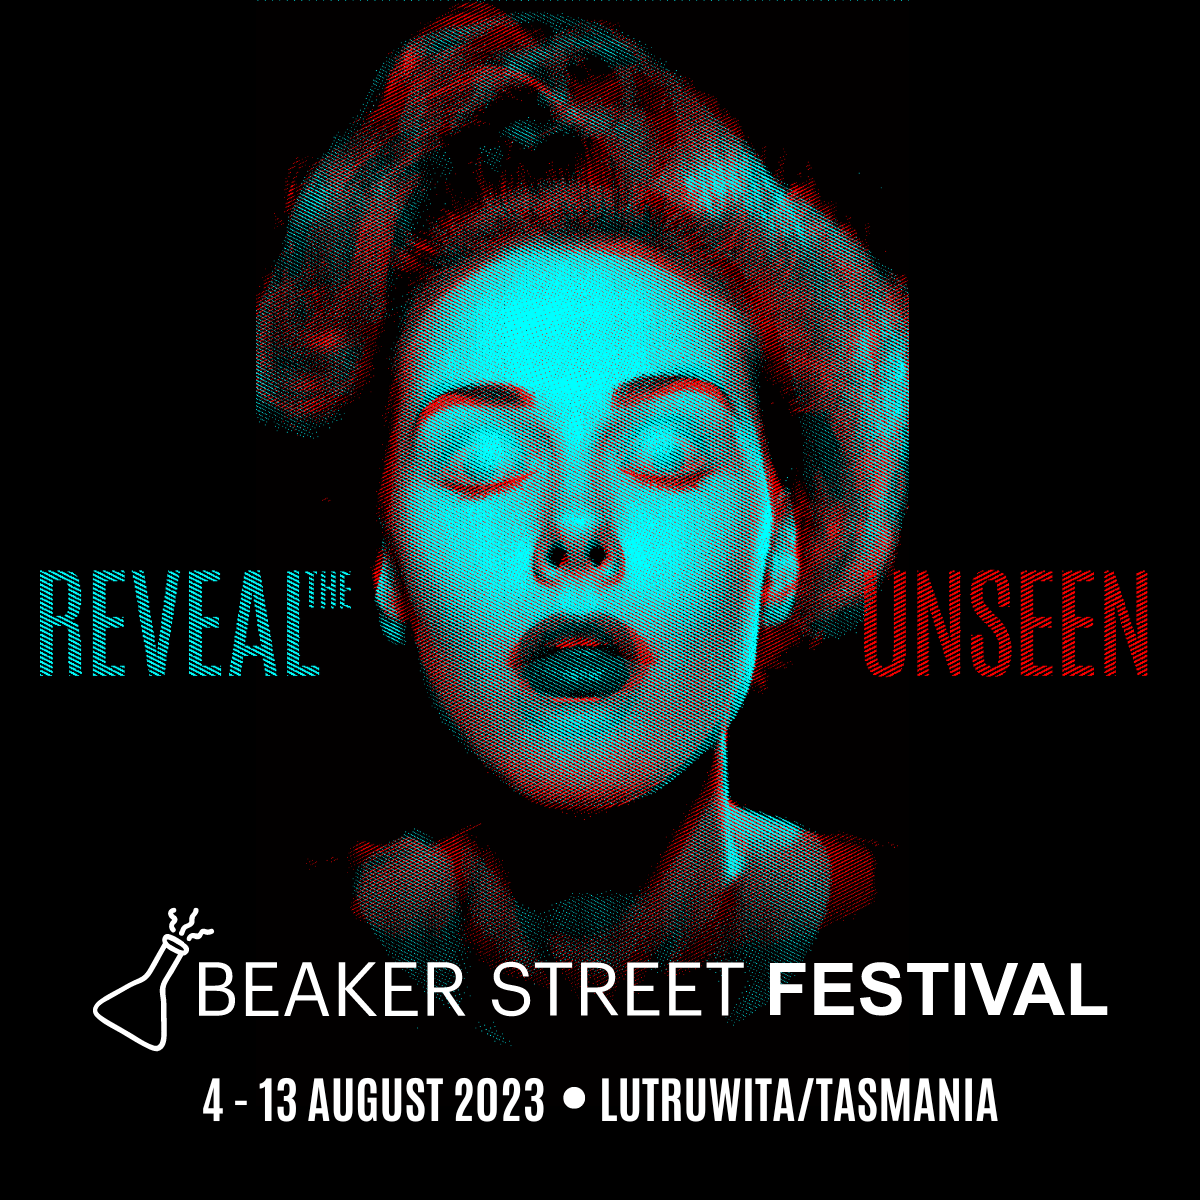 Festival Beaker Street